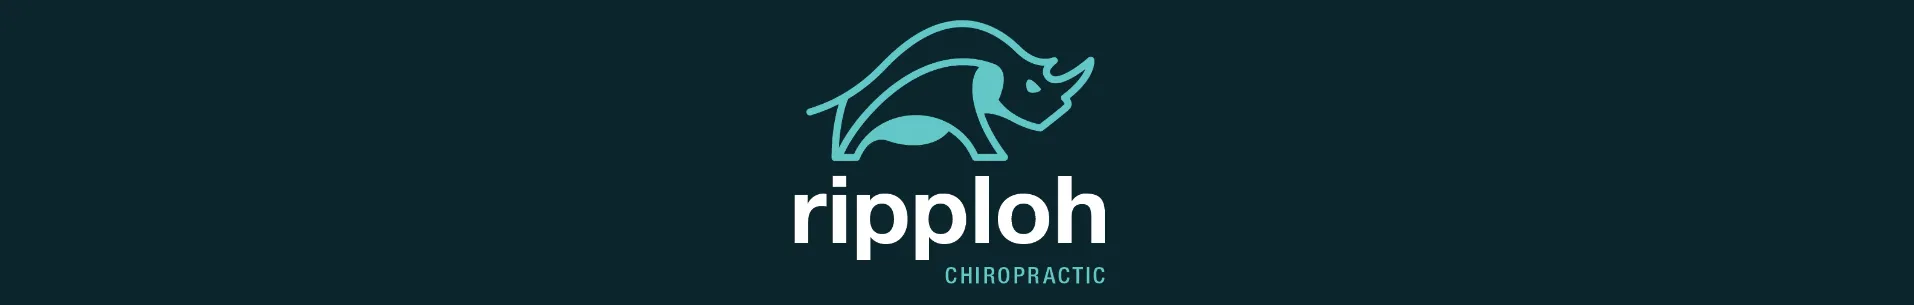 Ripploh Chiropractic